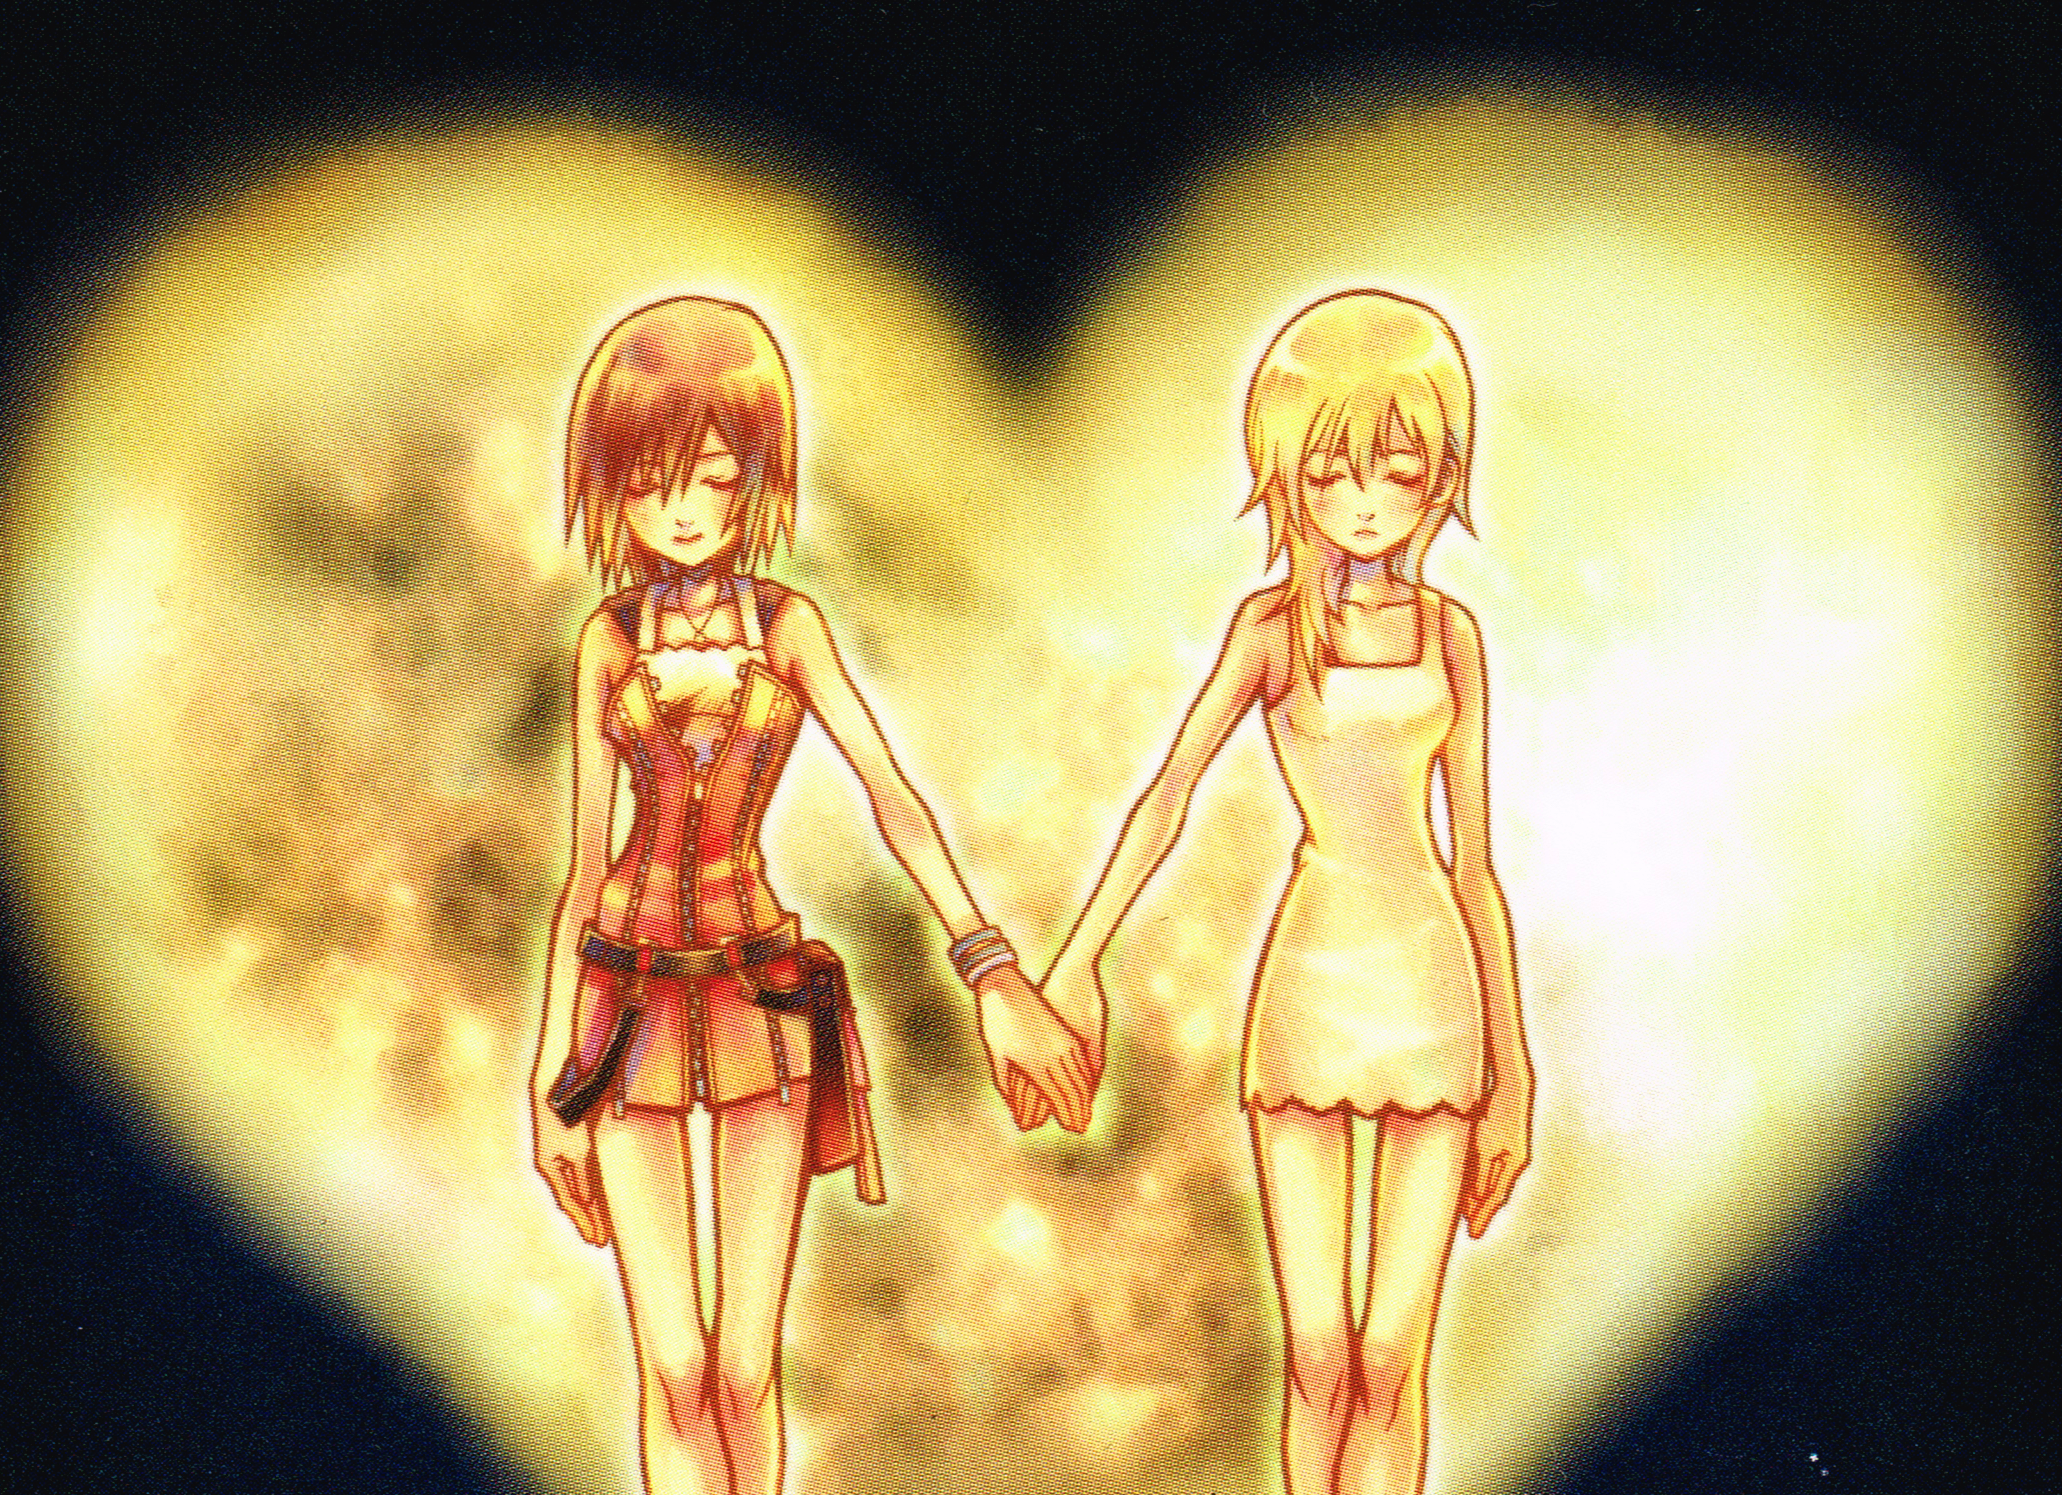 Image] Anime Kissing - Random & Forum Games - KH13 · for Kingdom Hearts